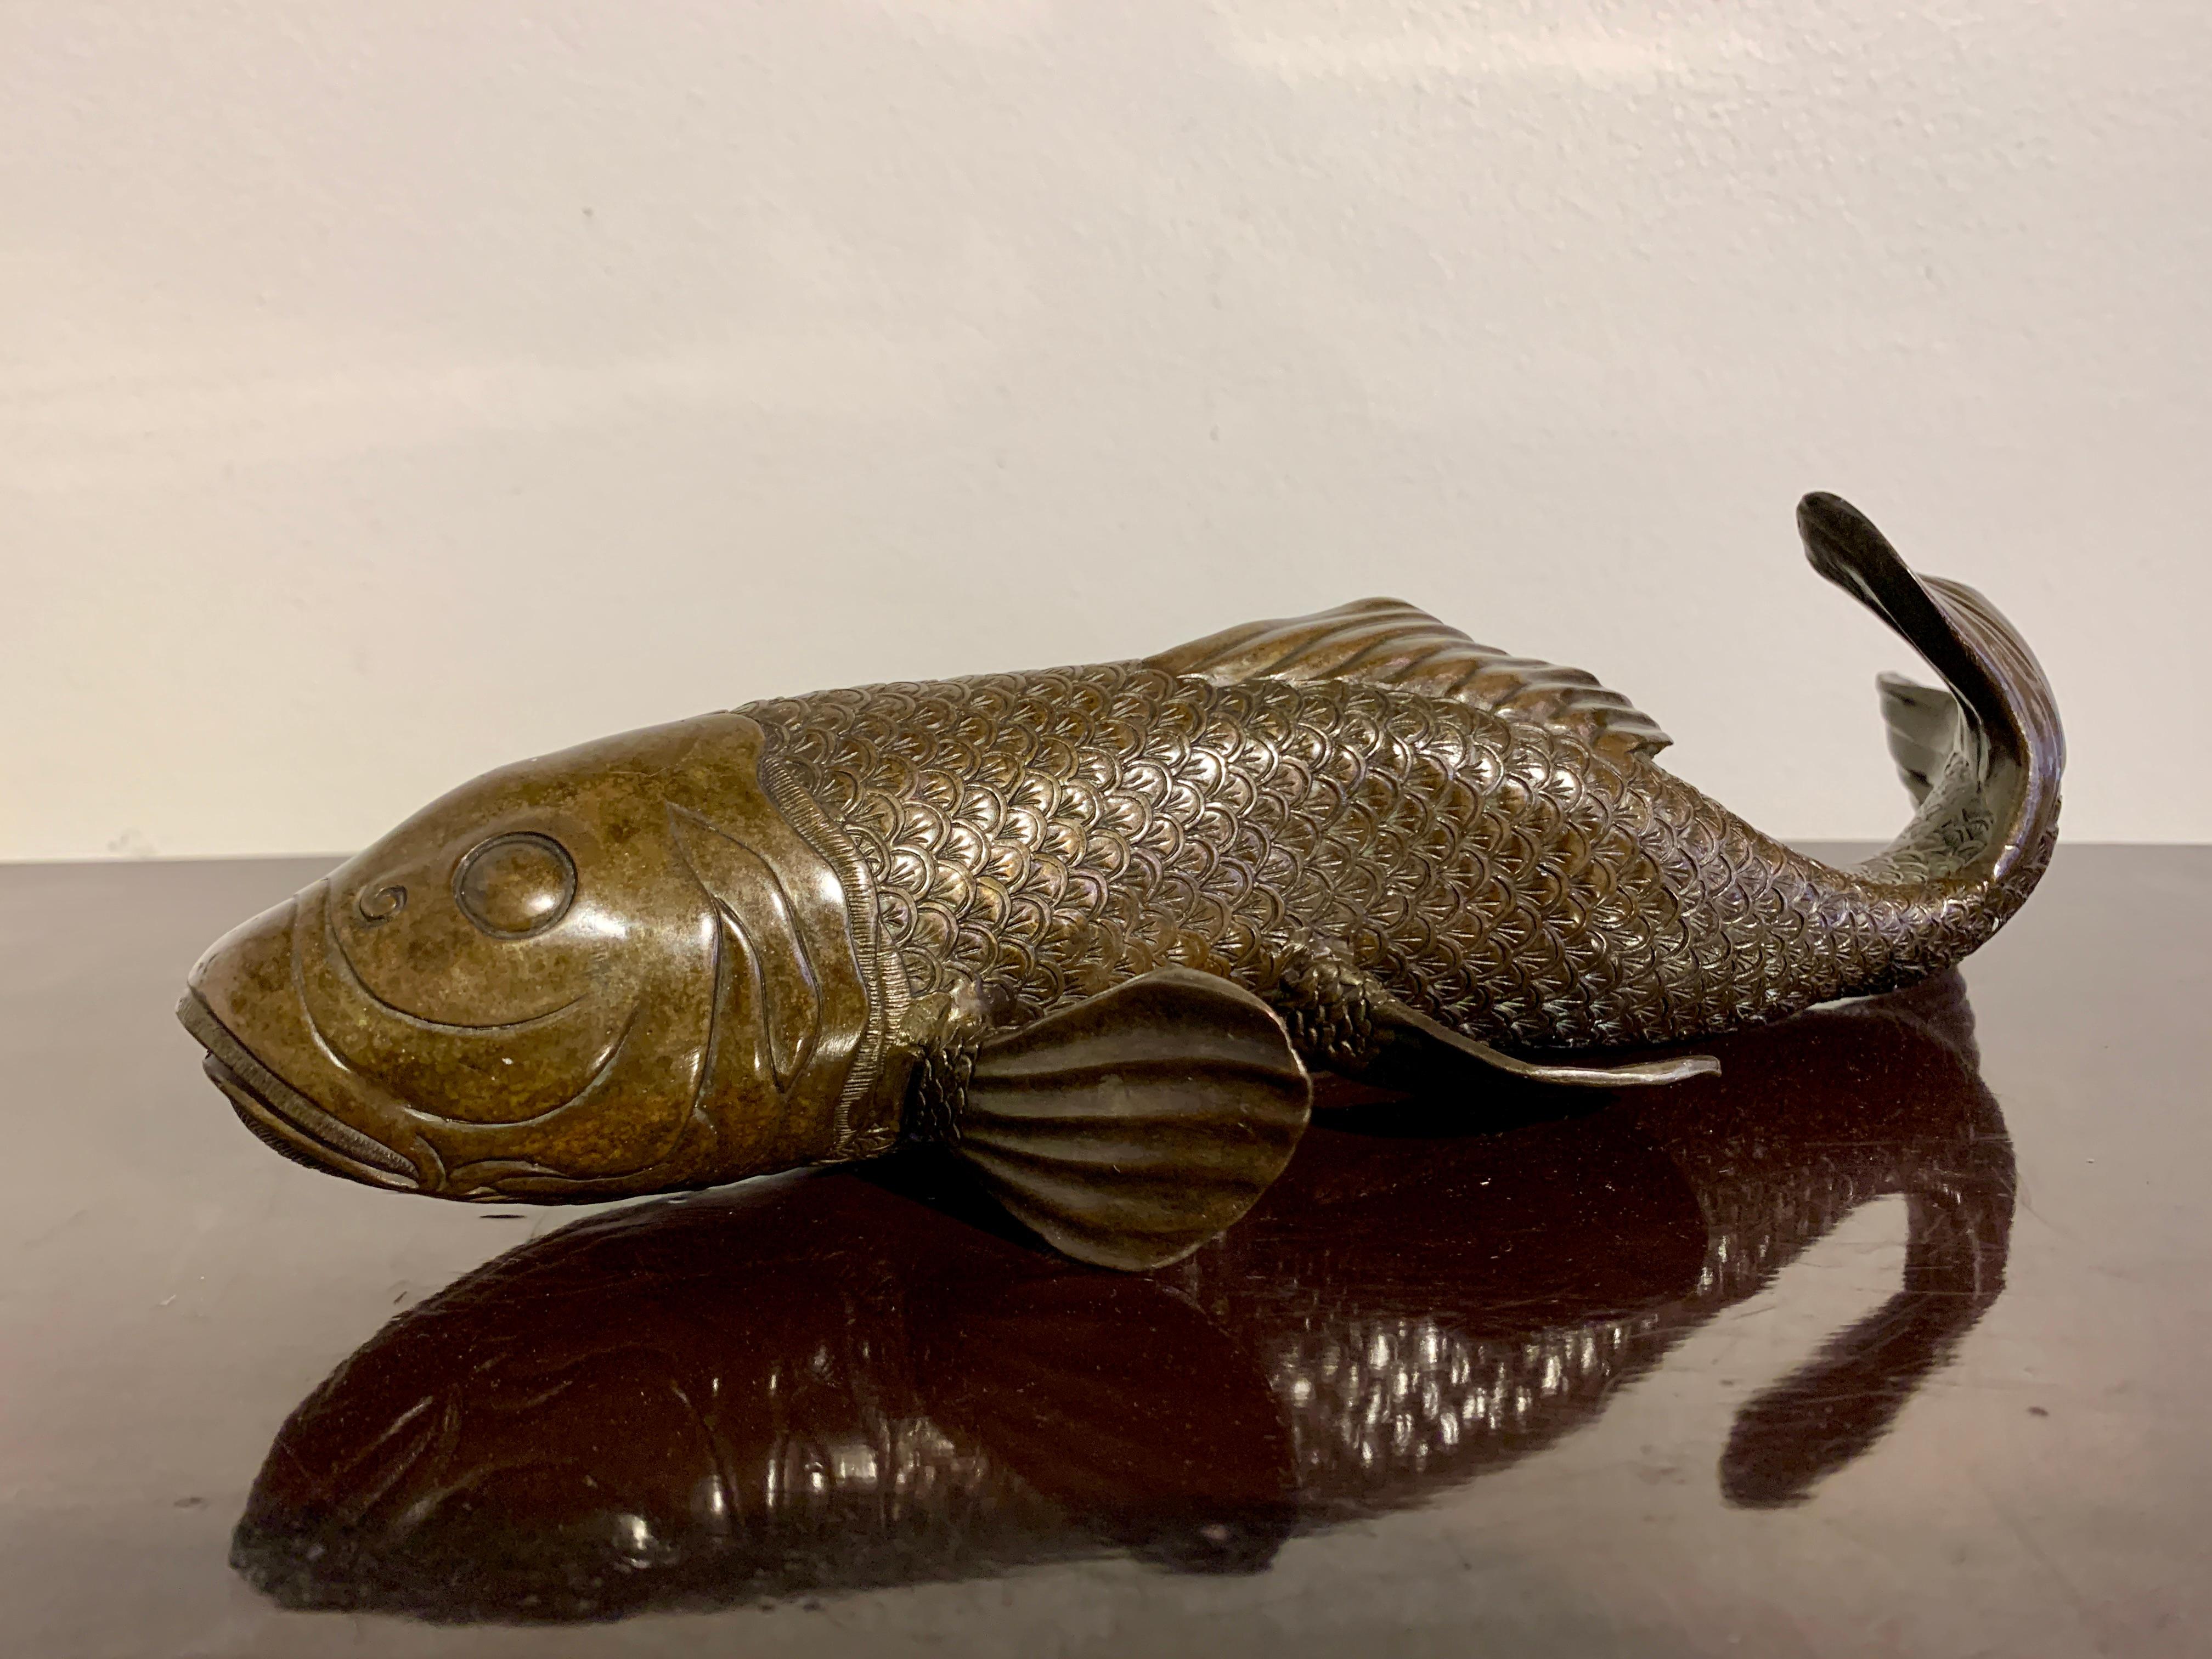 Ein eleganter japanischer Bronzeguss-Okimono eines schwimmenden Karpfens, Taisho-Periode (1912 - 1926), frühes 20. Jahrhundert, Japan.

Die anmutigen Fische sind realistisch in Bewegung dargestellt, als würden sie gegen eine Strömung schwimmen. Die